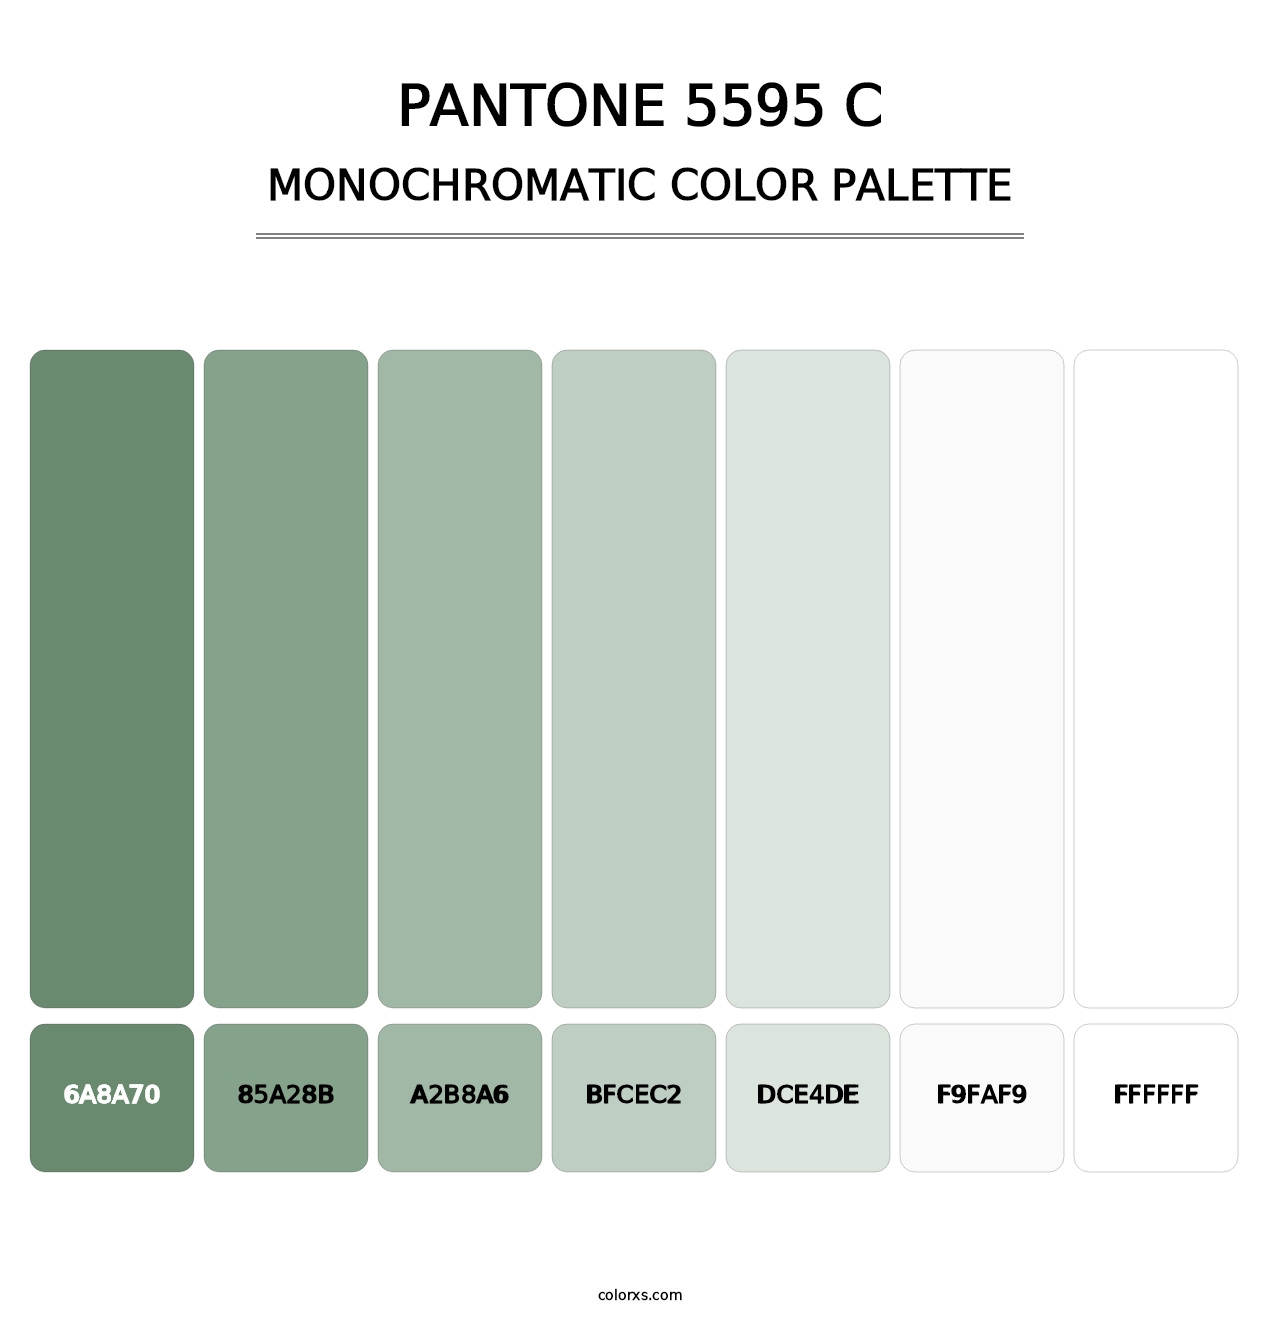 PANTONE 5595 C - Monochromatic Color Palette